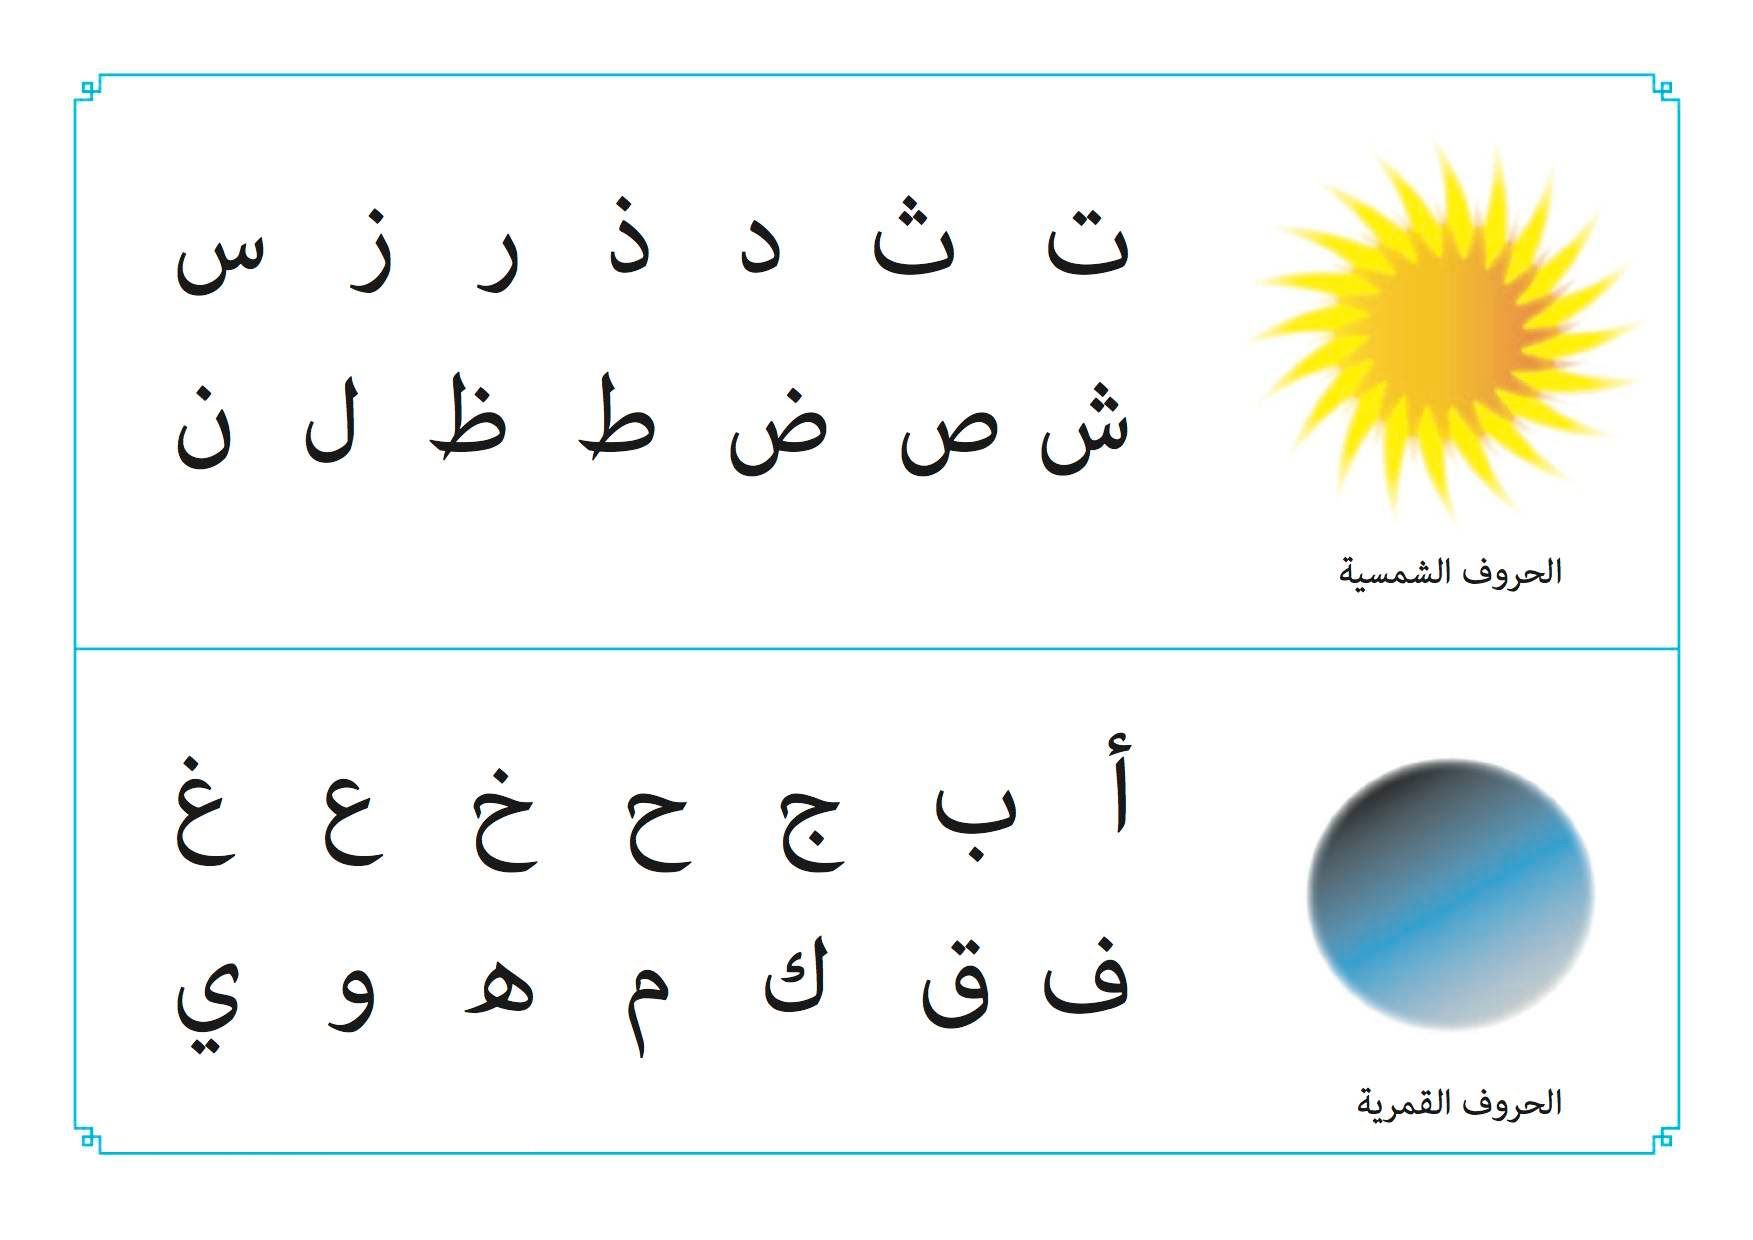 b36fb96dcb8b3fd9f0f17cdfb9ae6f87 1 - Arabic Grammar Simplified